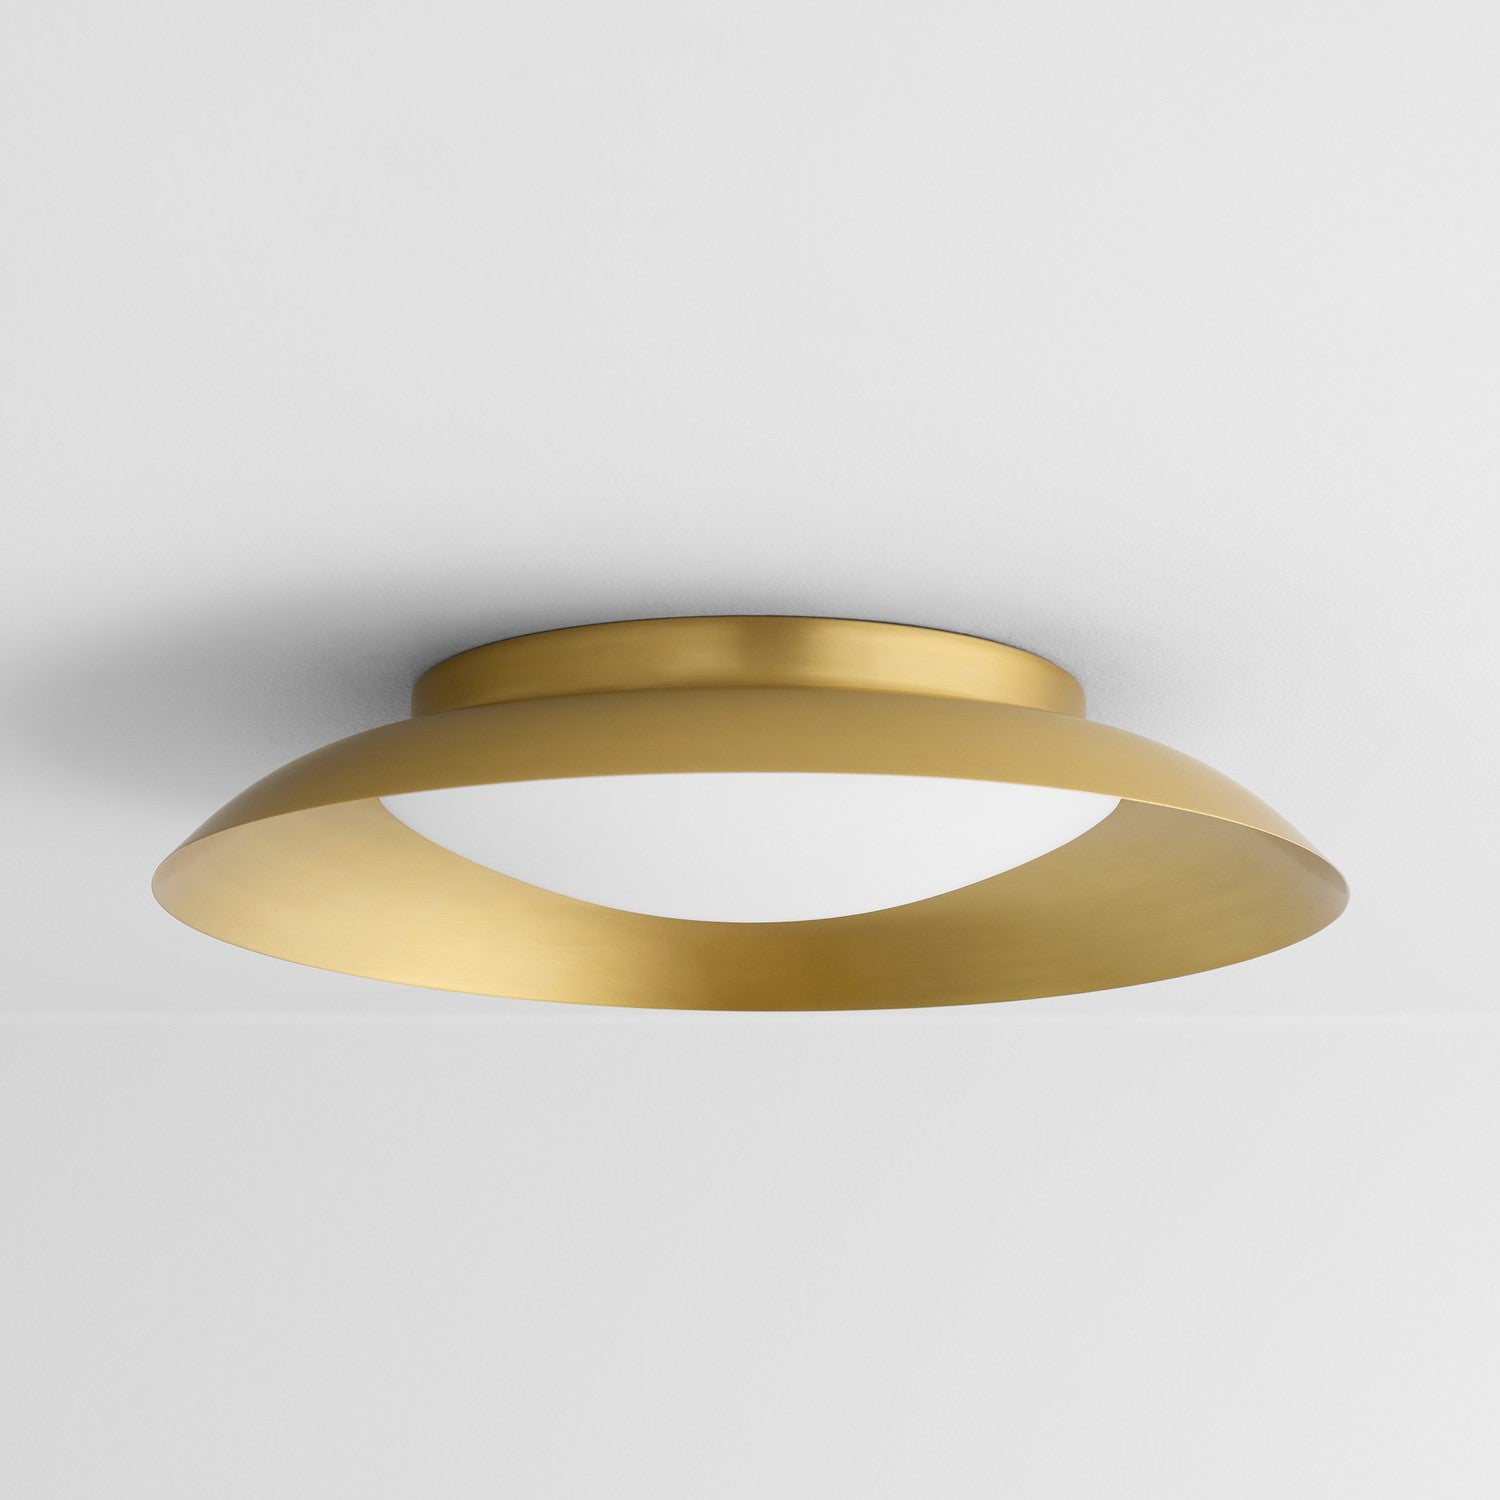 Oxygen Bongo 3-679-40 Gold Flush Ceiling Light Fixture - Aged Brass